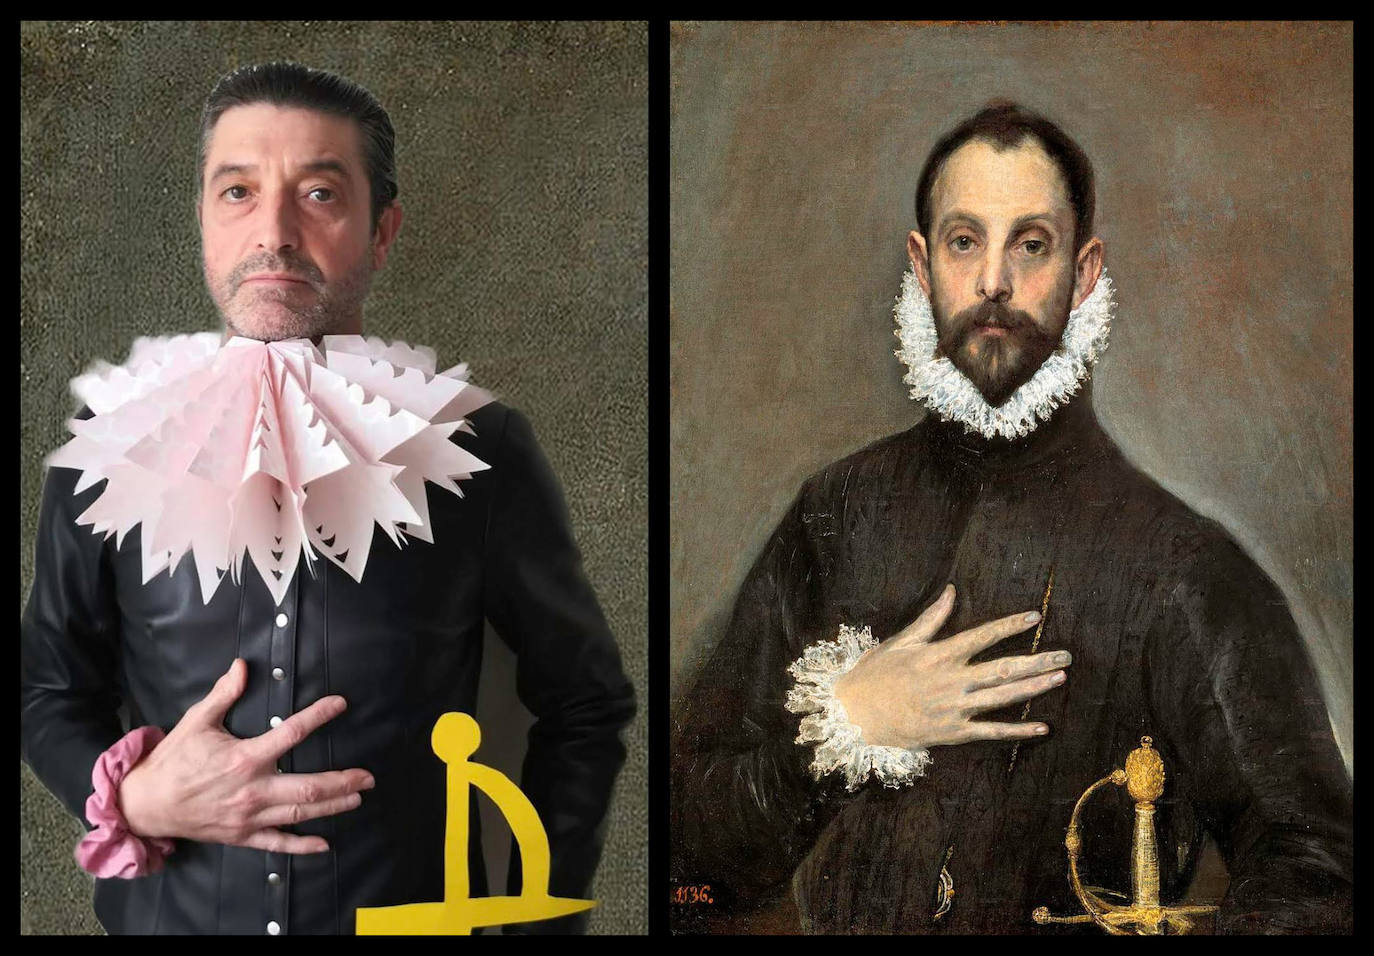 Título del cuadro: ‘El caballero de la mano en el pecho’. Autor/a: El Greco. Pintado: hacia 1.580. Maestro/a imitador: José Manuel Vallejo, Maestro de Primaria.